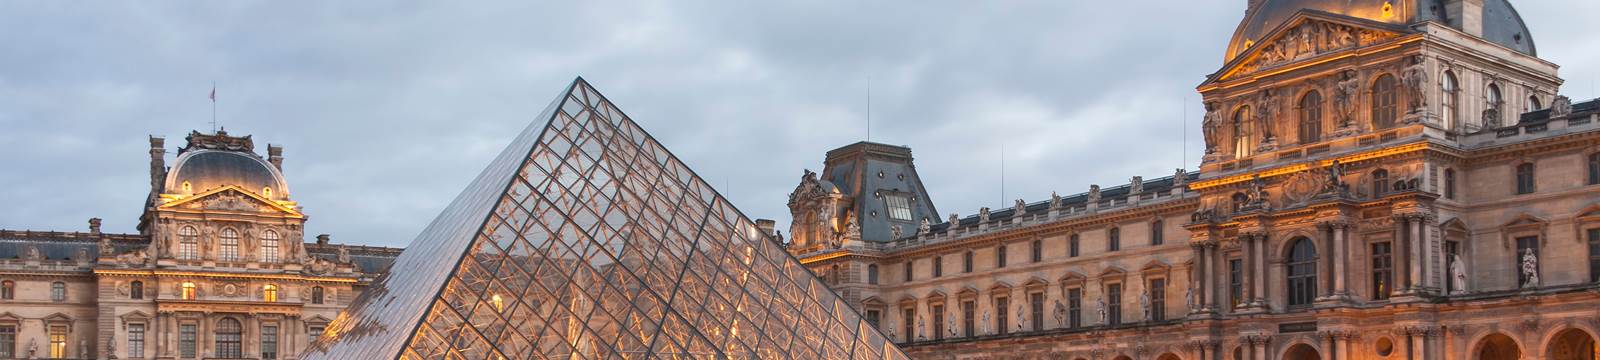 Louvre Museum Hotel Champs Elysees Paris